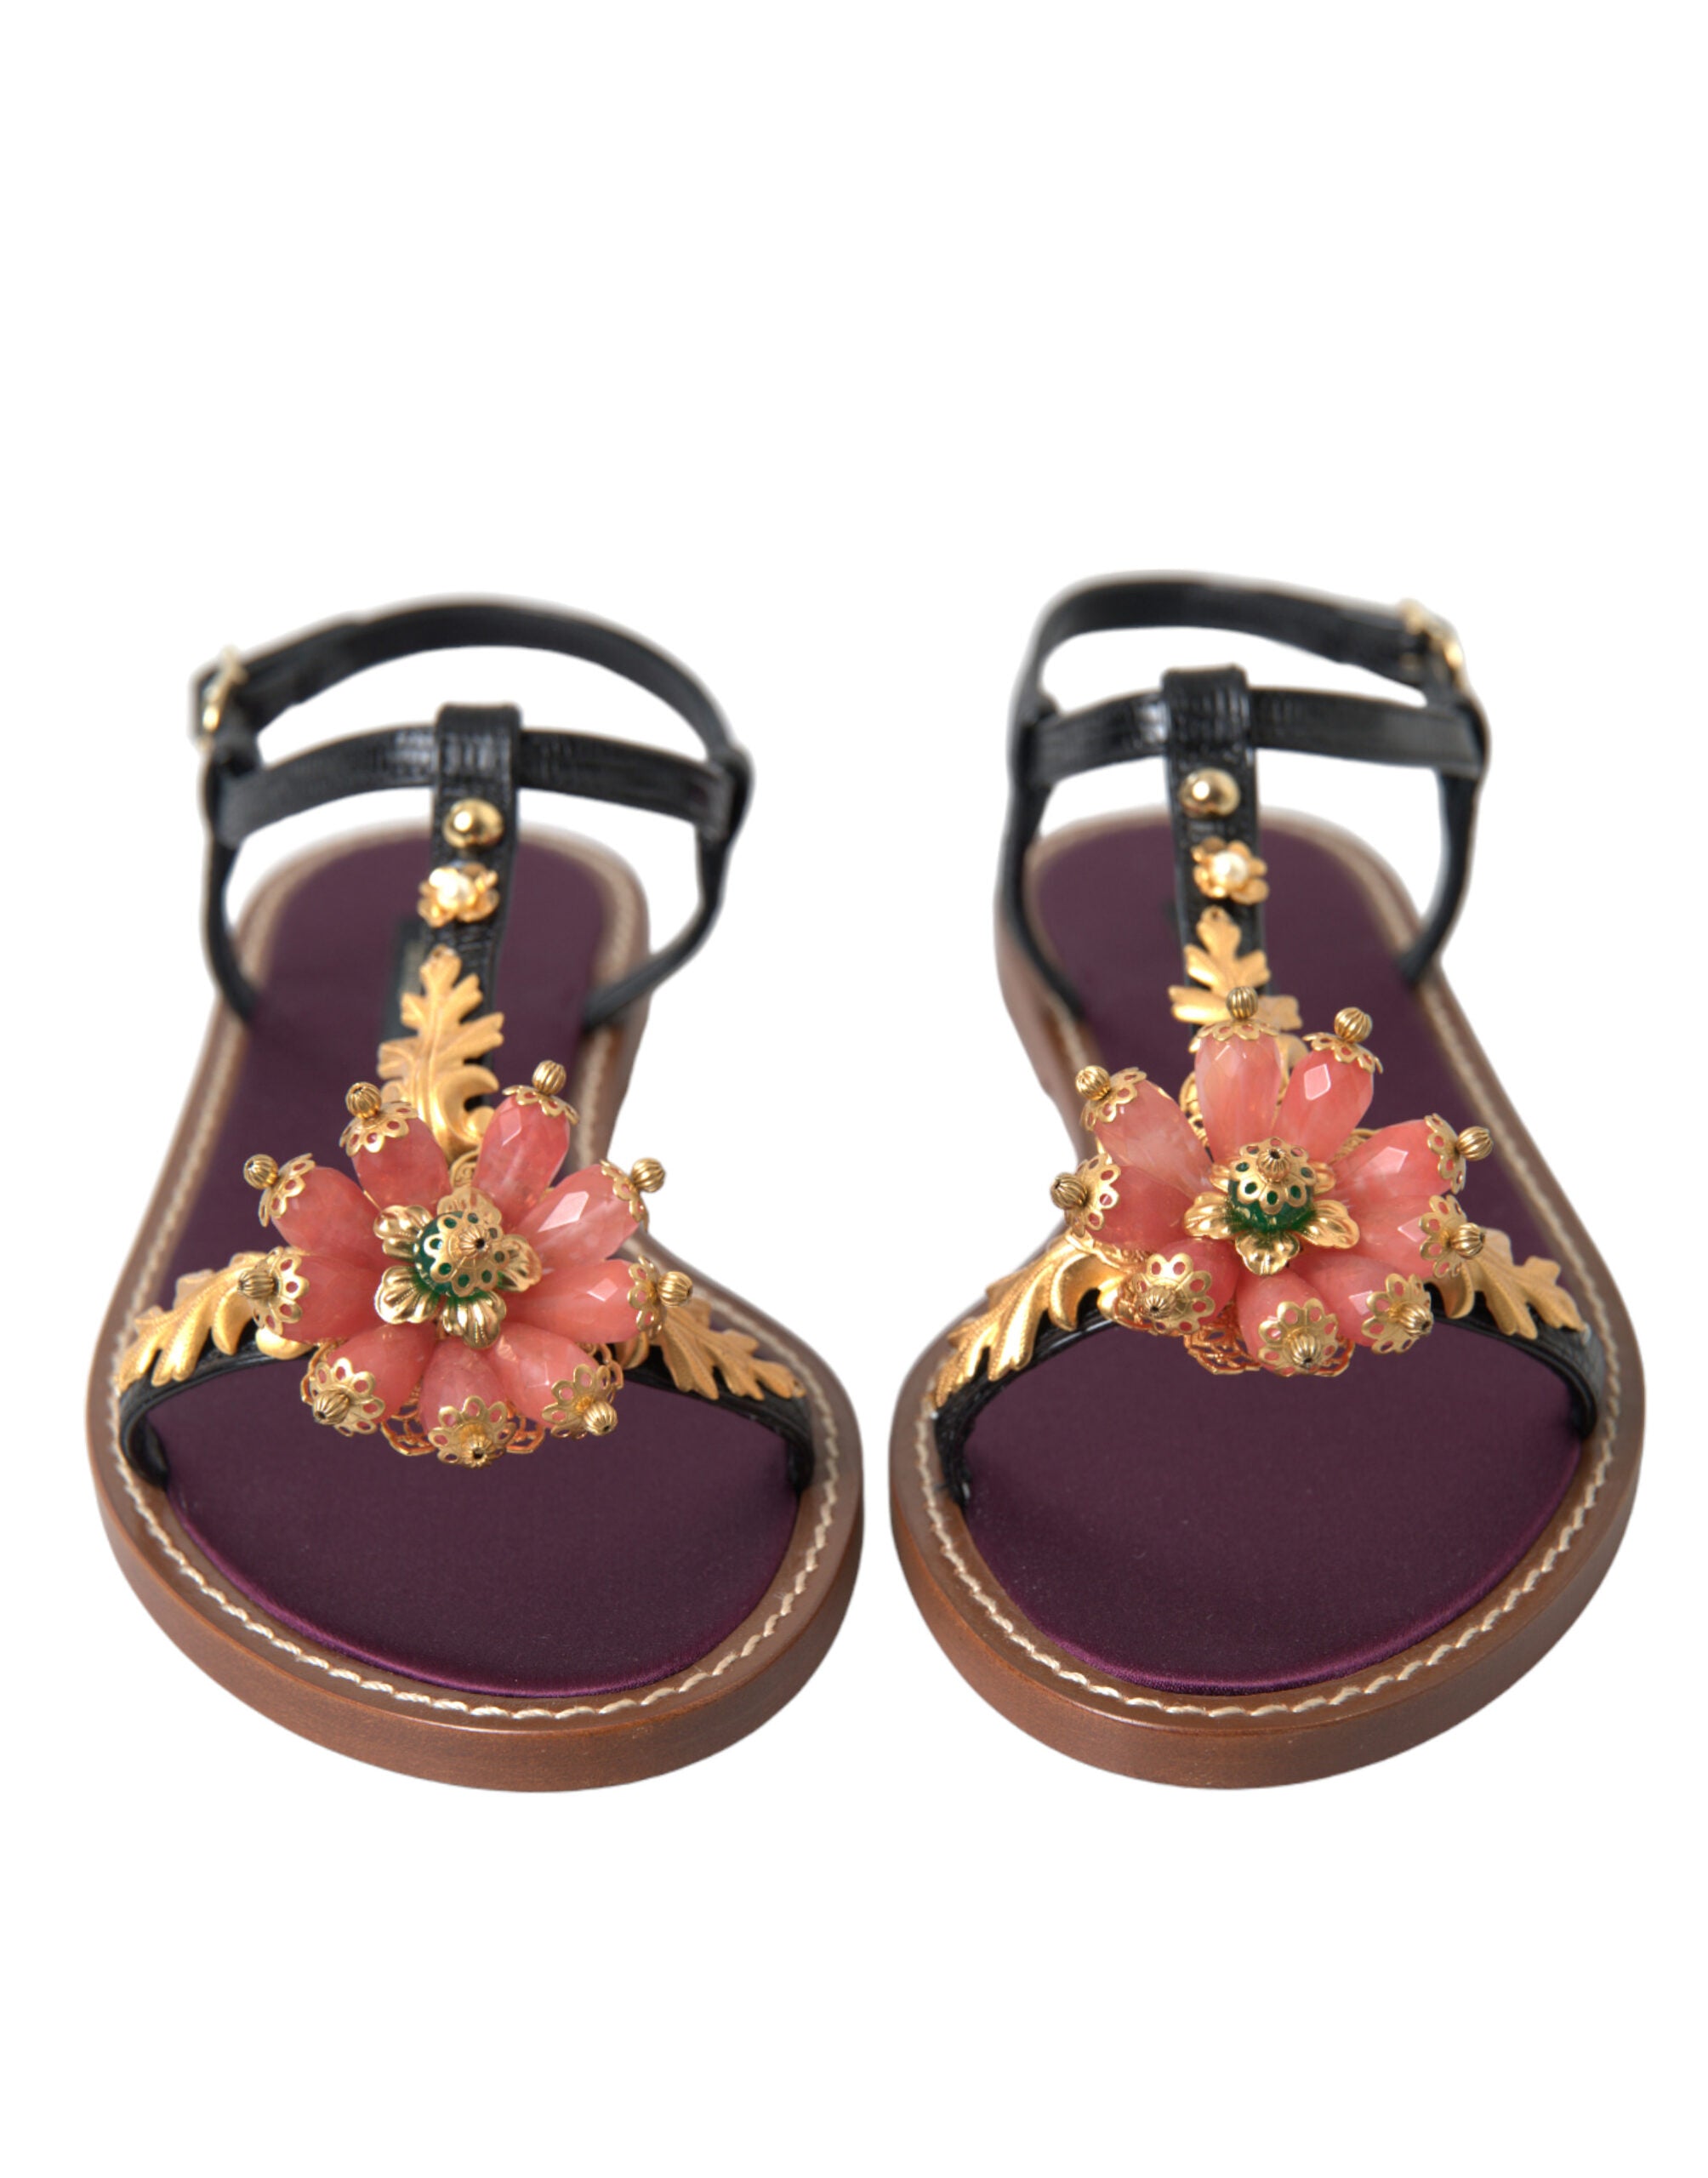 Dolce & Gabbana Elegant Crystal-Adorned Flat Sandals